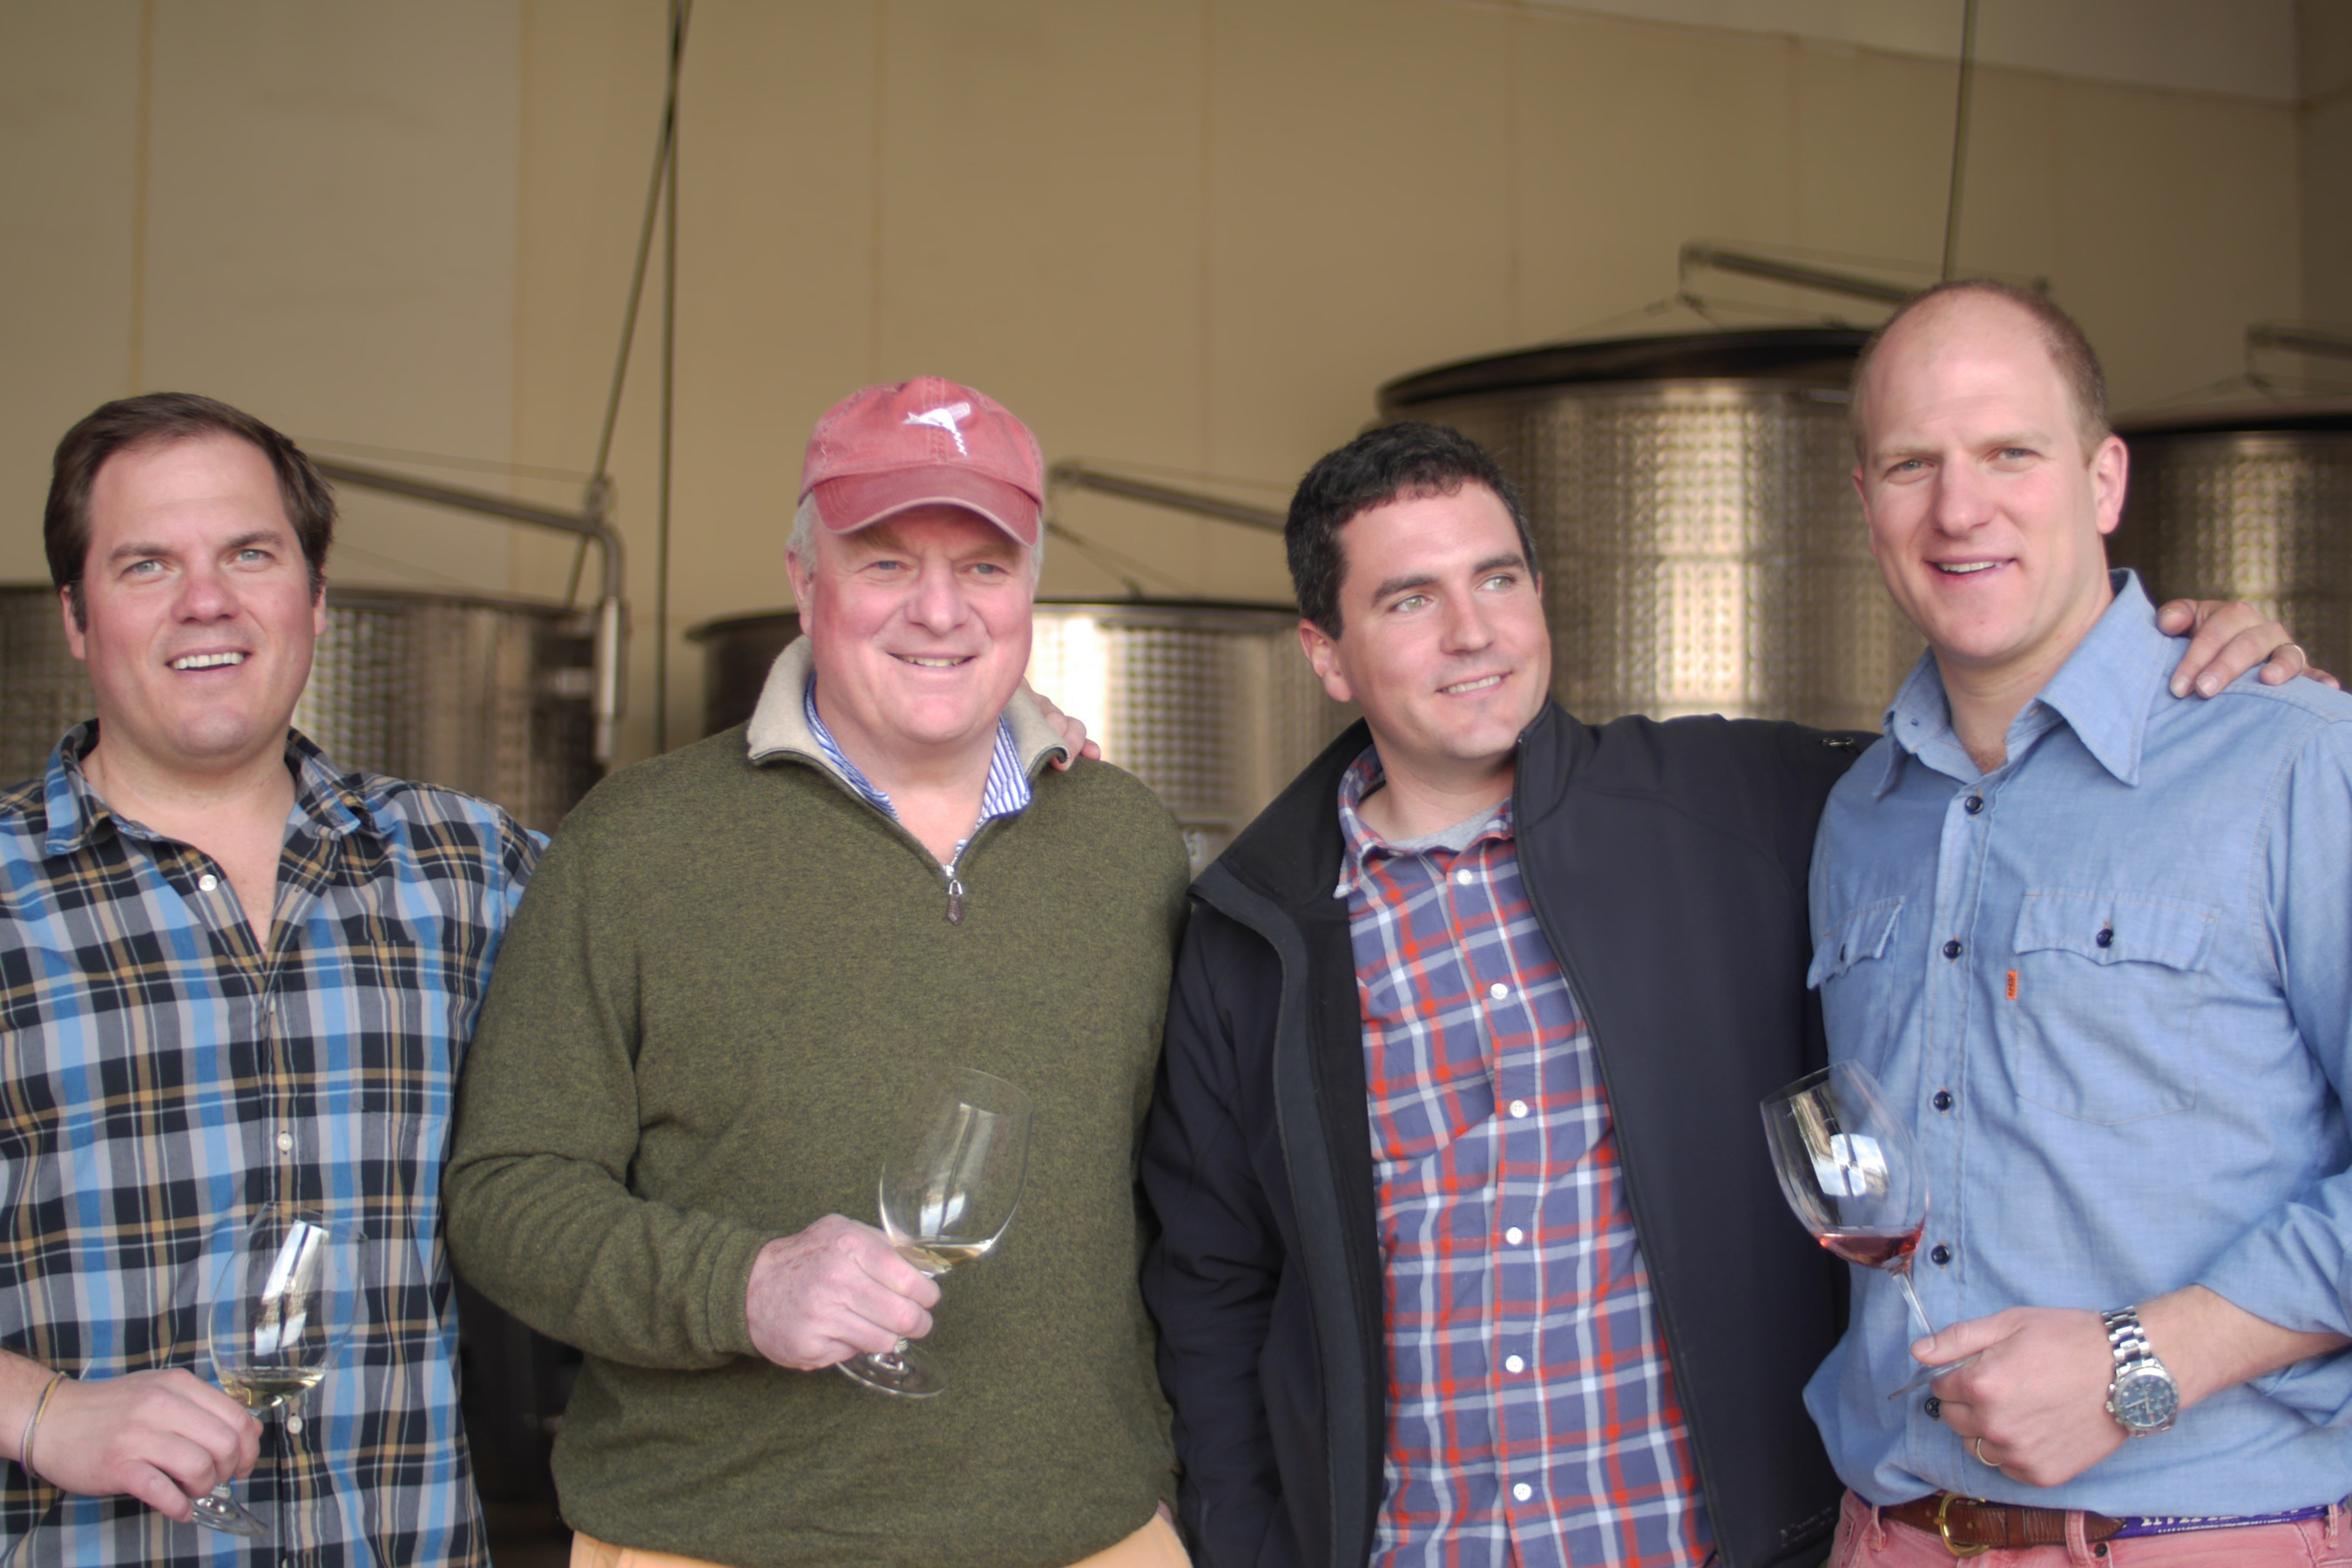 From left to right: Tripp Donelan, Joe Donelan, Donelan Winemaker Joe Nielsen, and Cushing Donelan.